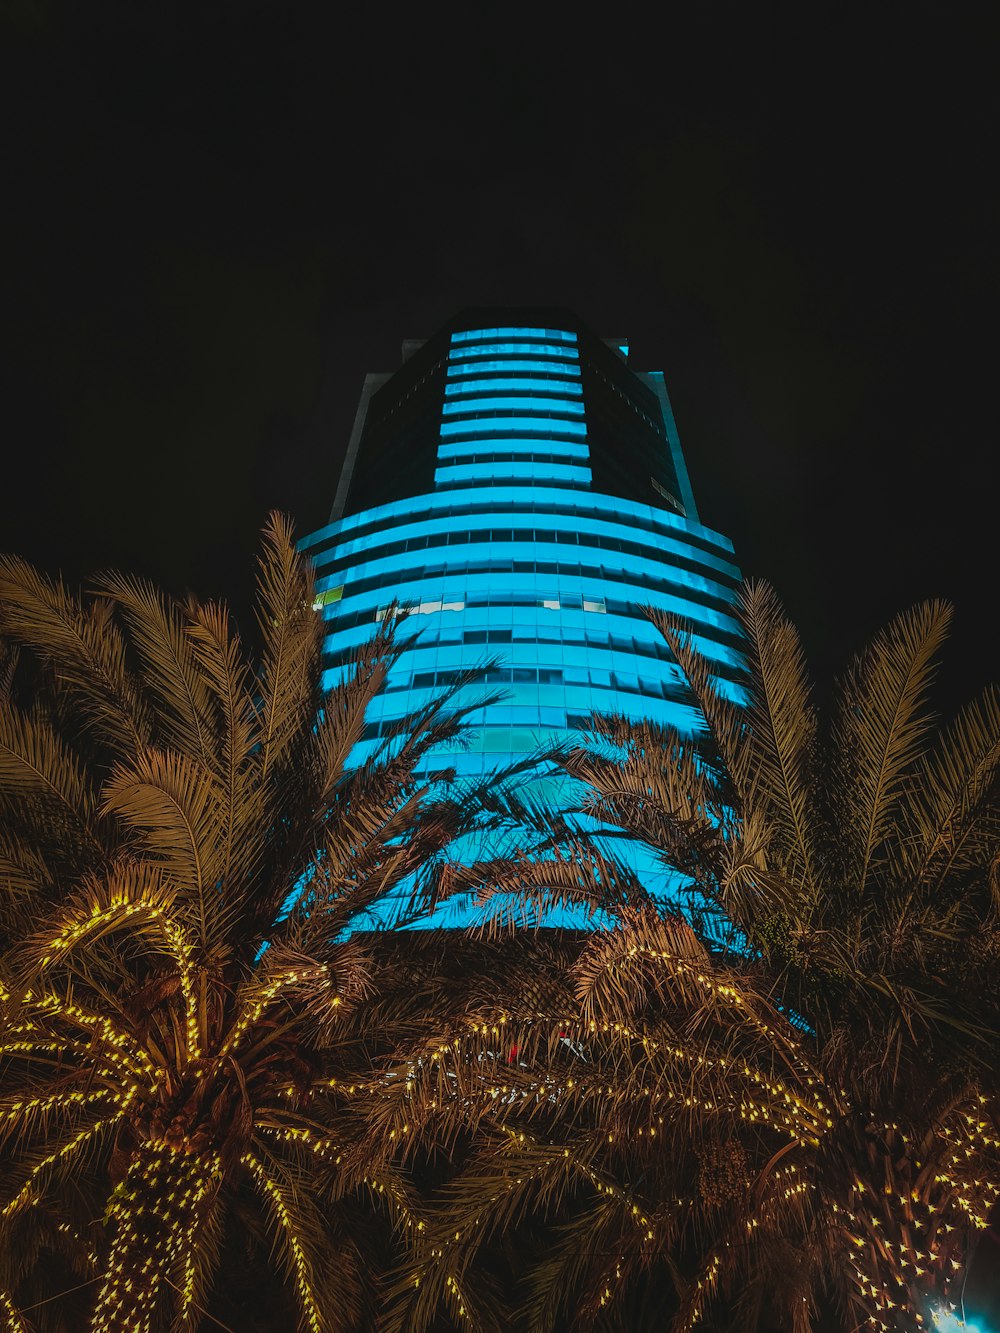 Un edificio alto iluminado con luces azules